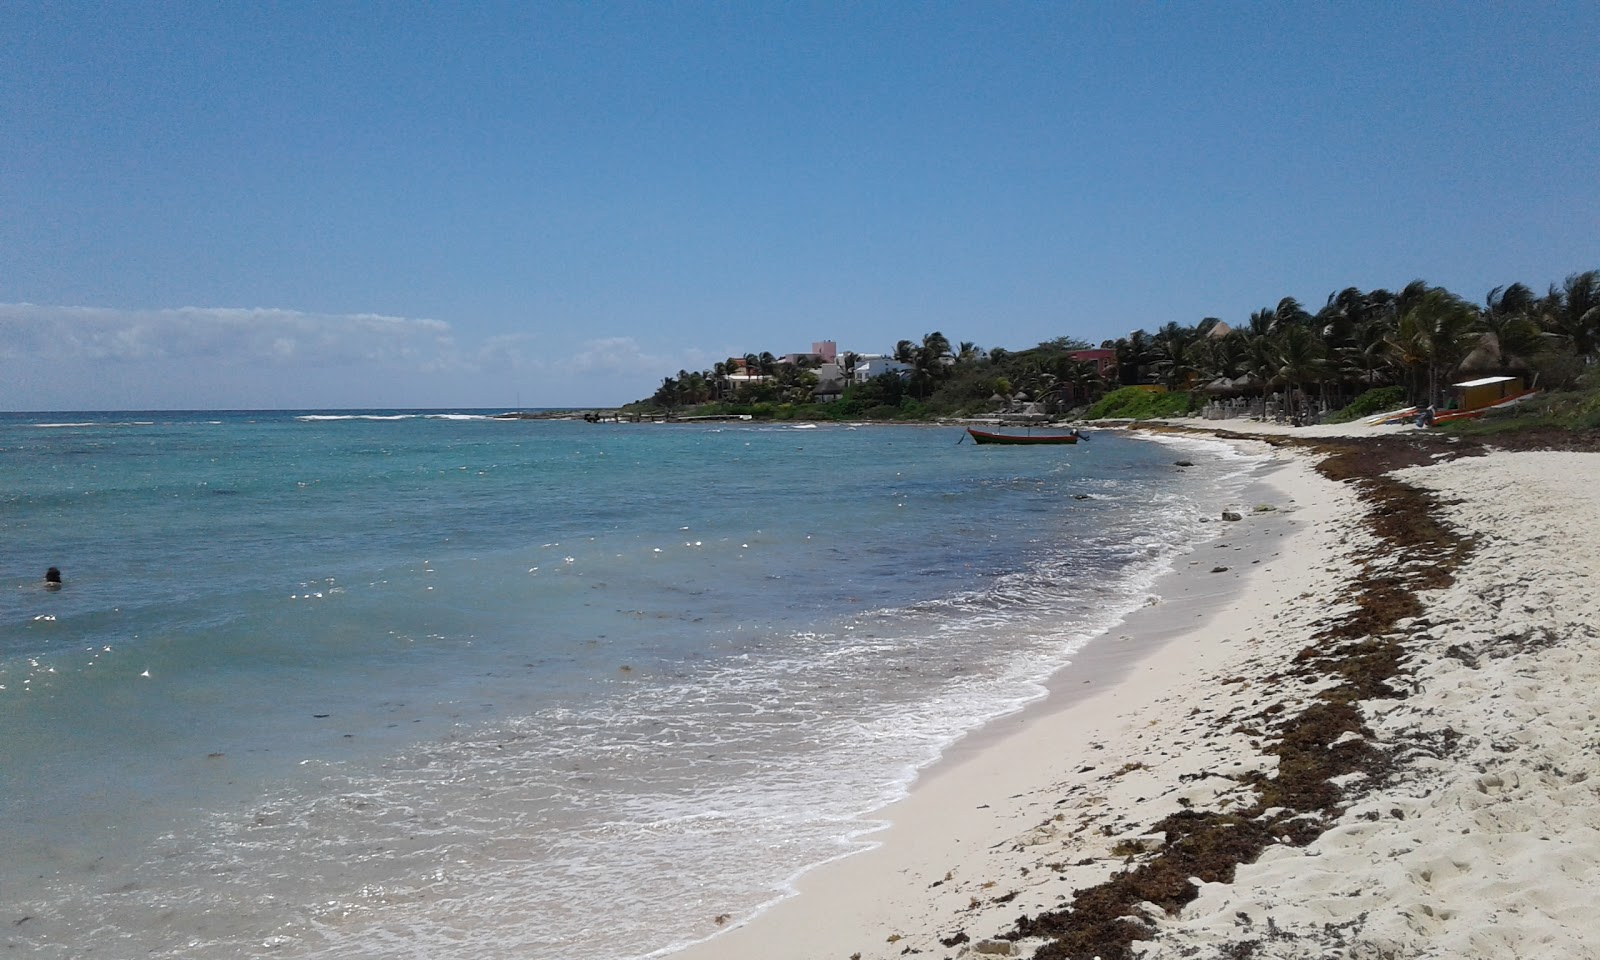 Foto af Playa Caribe - populært sted blandt afslapningskendere